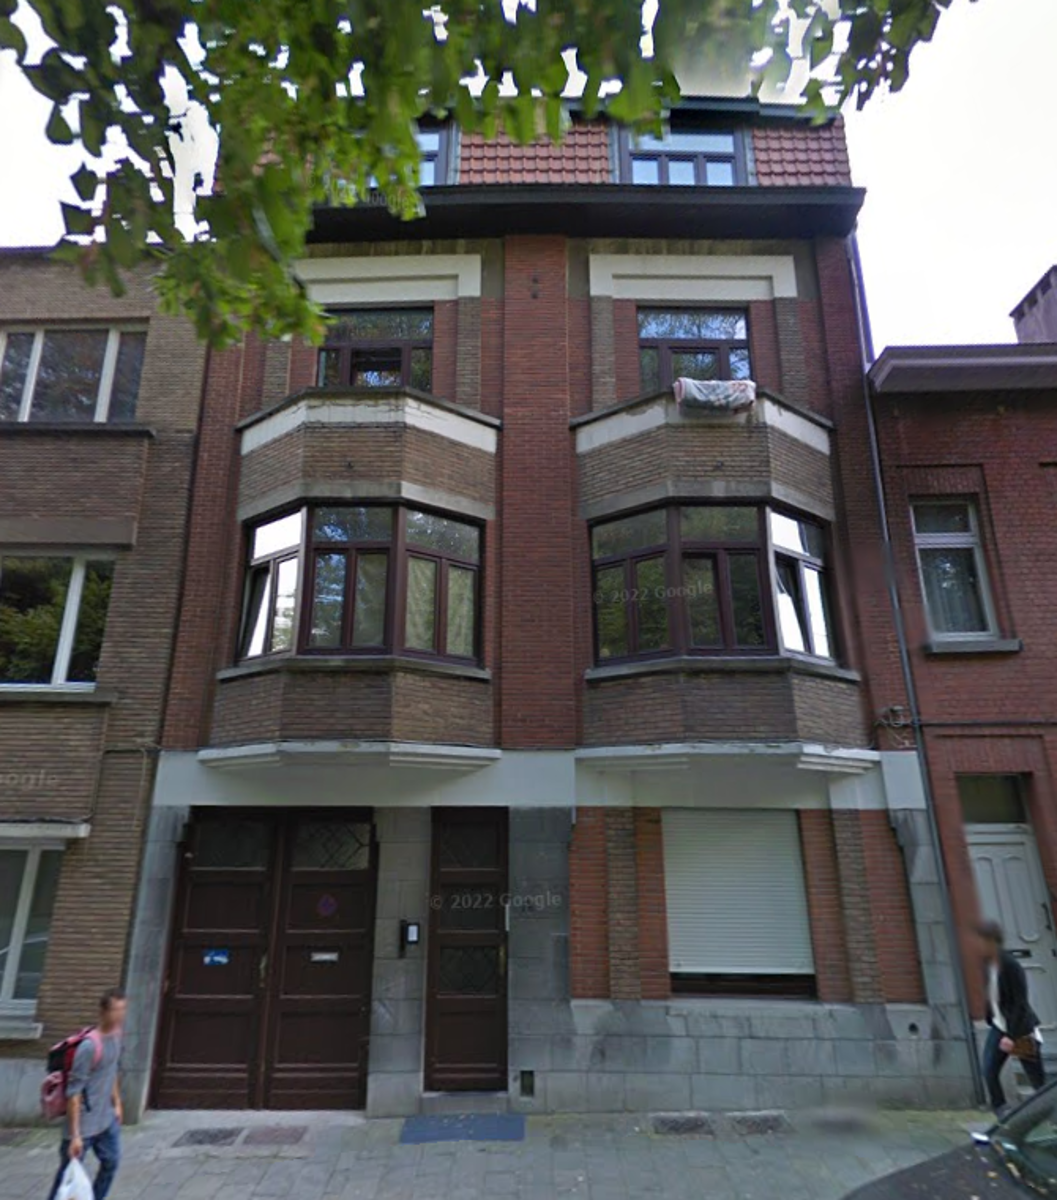 Immeuble mixte à vendre à Anderlecht 1070 470000.00€ 8 chambres 250.00m² - annonce 136091